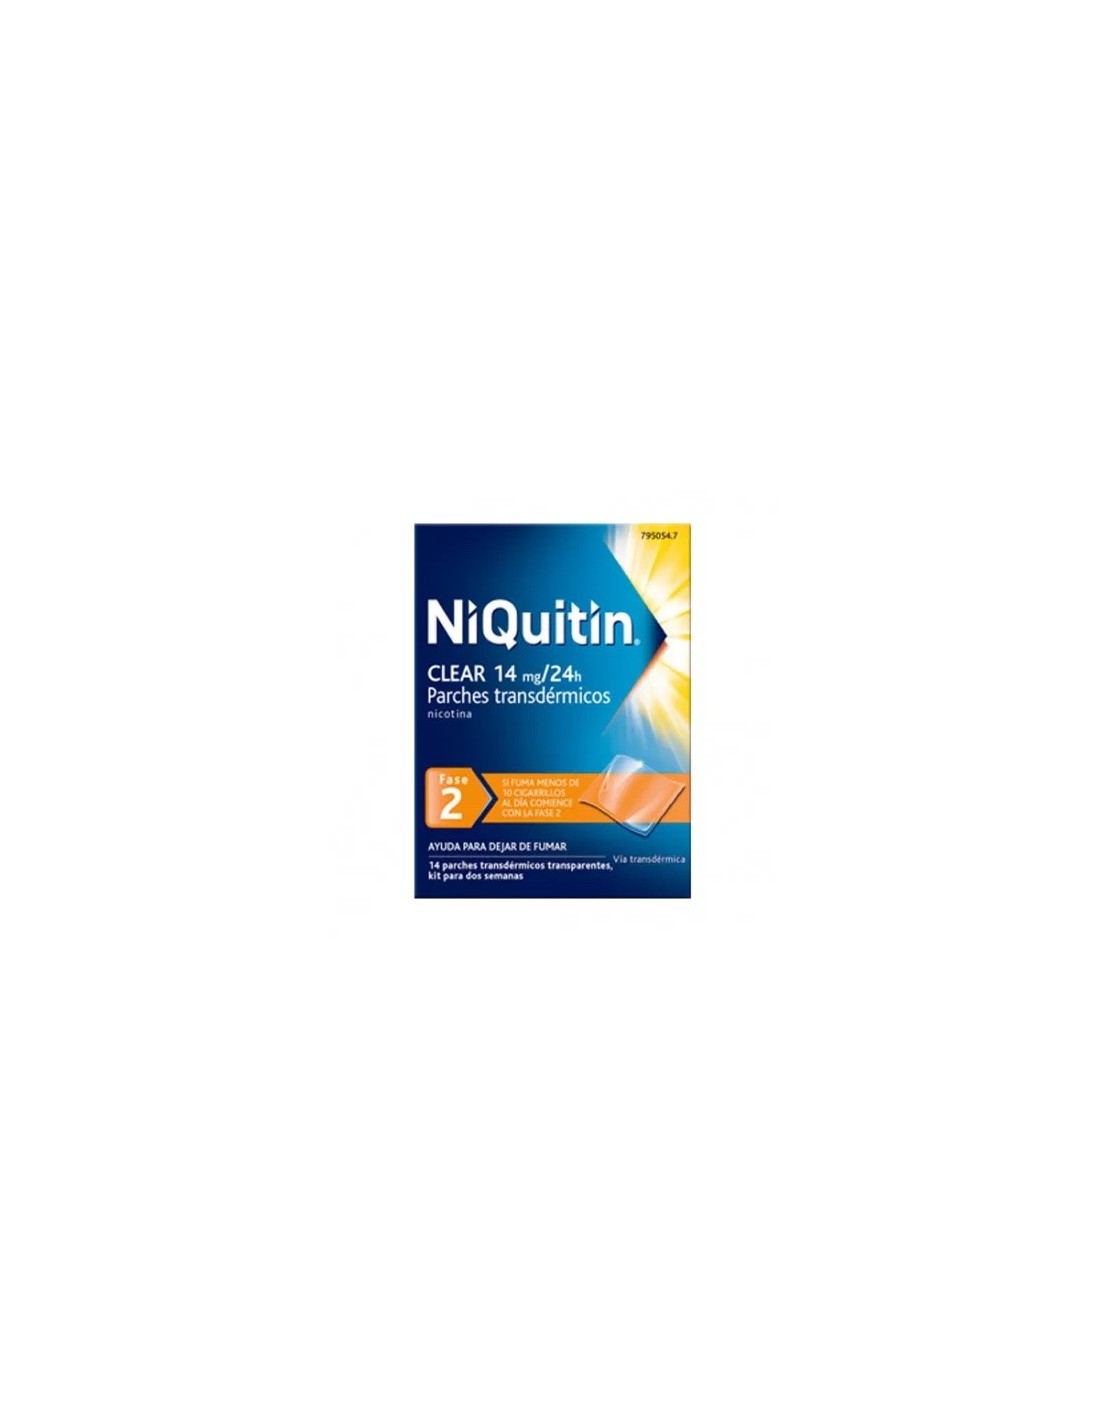 Niquitin Clear 14 mg/24 H 14 Parches Transdermicos